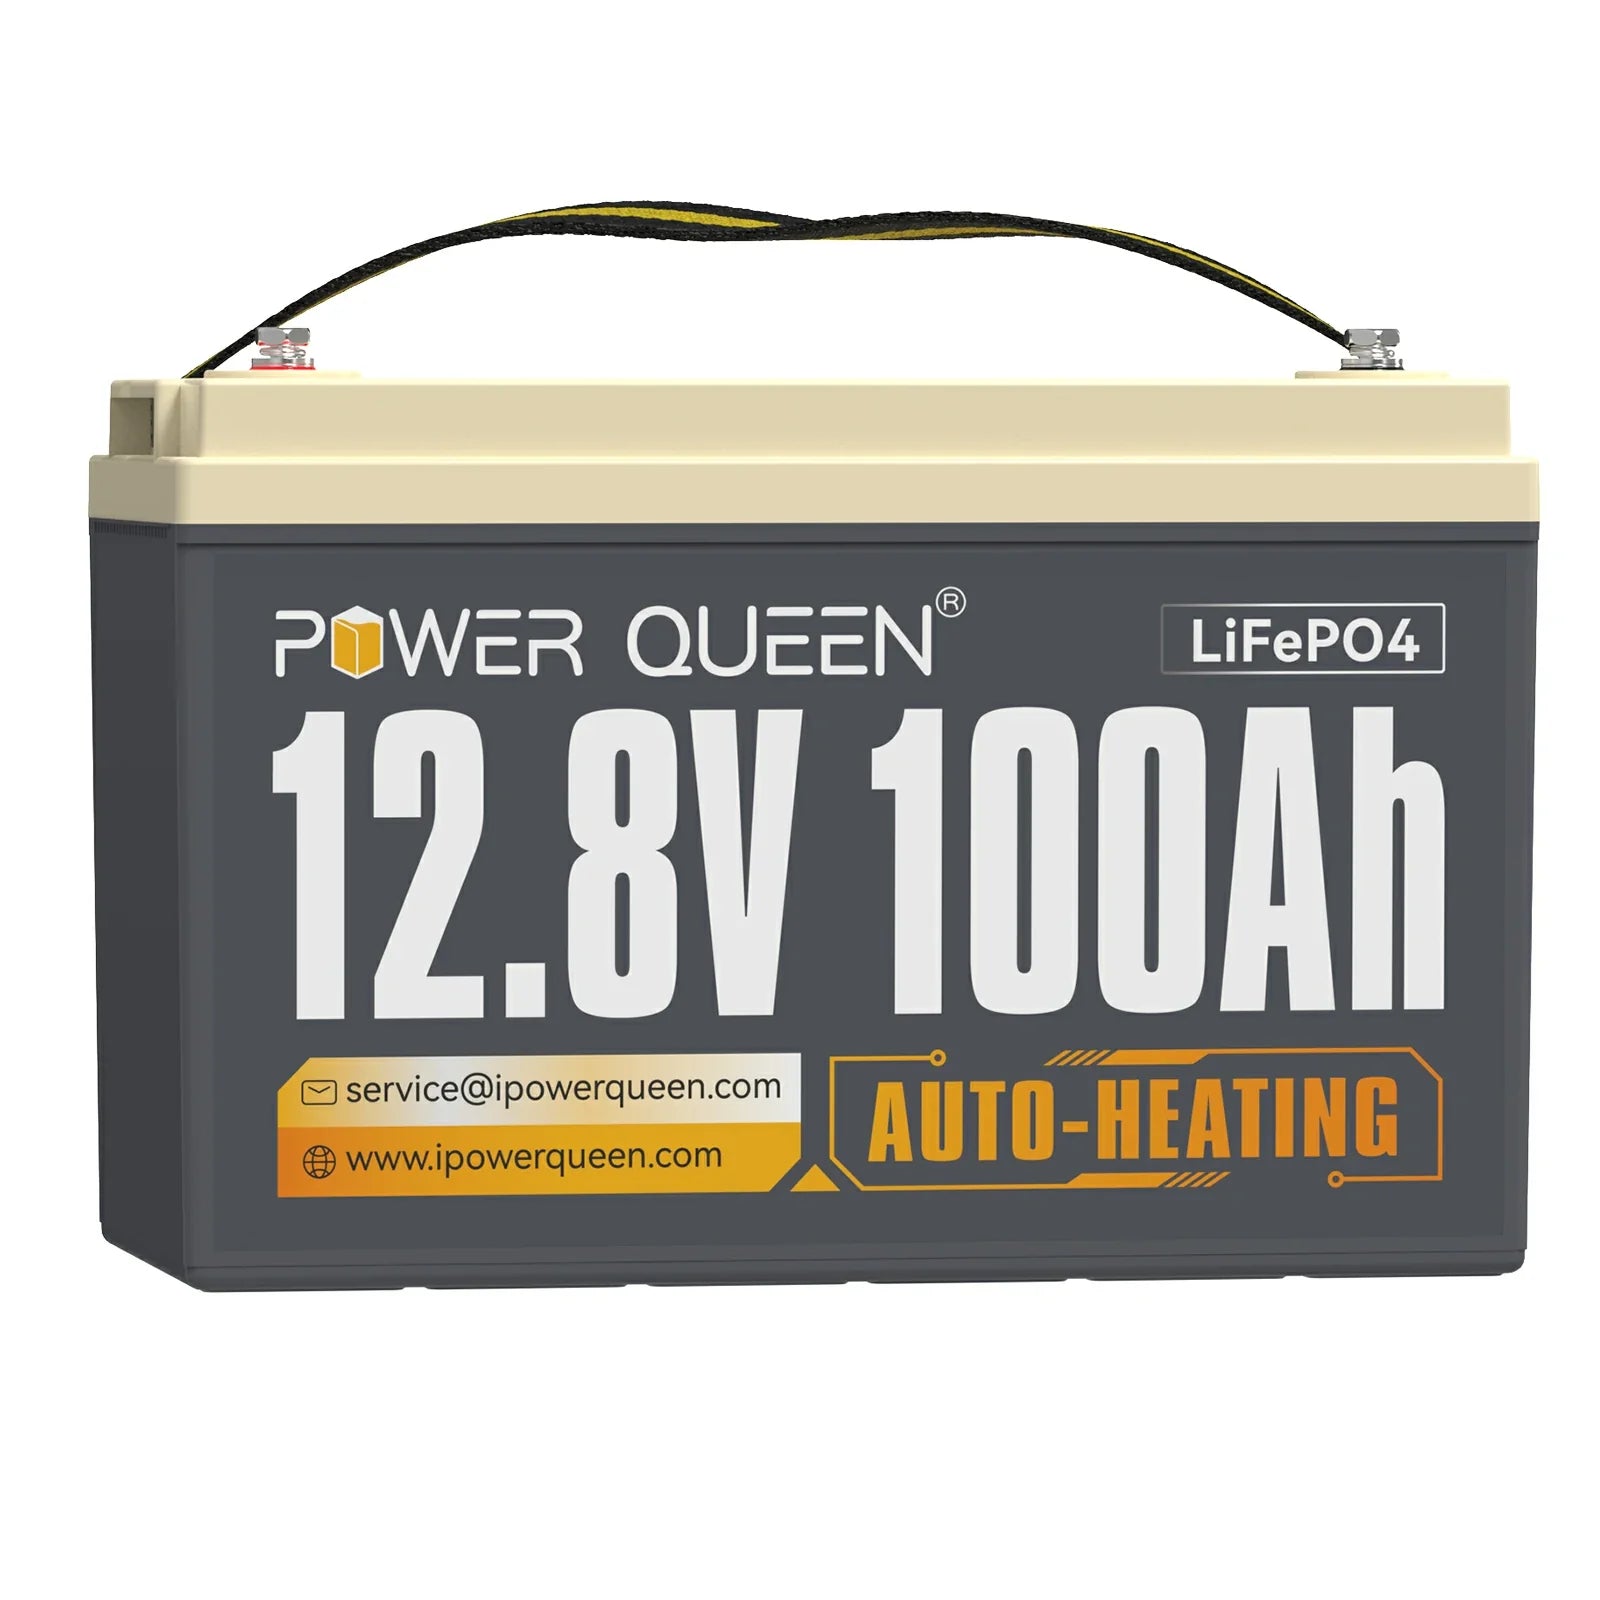 Power Queen 12,8V 100Ah Selbstheizende LiFePO4-Akku, Eingebautes 100A BMS